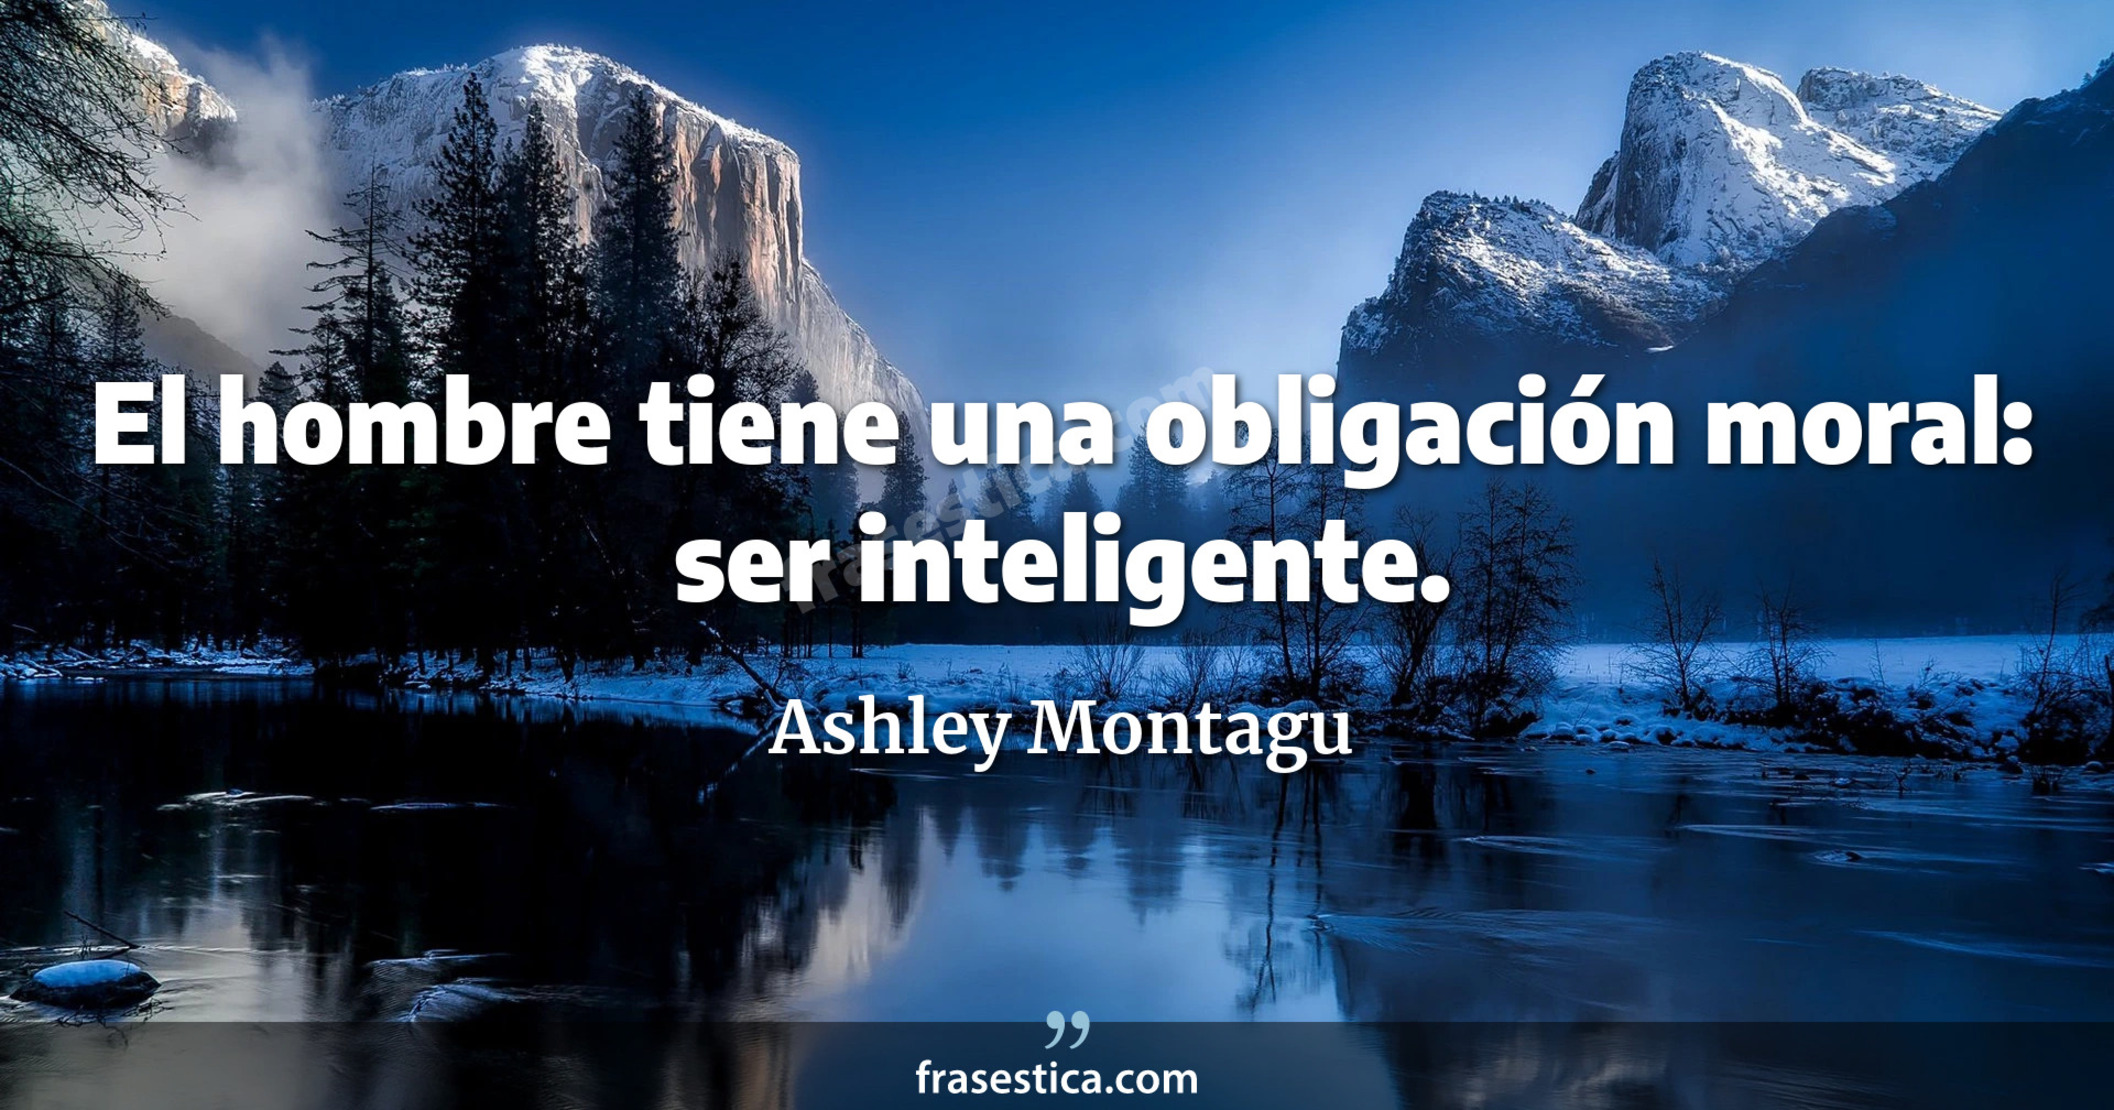 El hombre tiene una obligación moral: ser inteligente. - Ashley Montagu